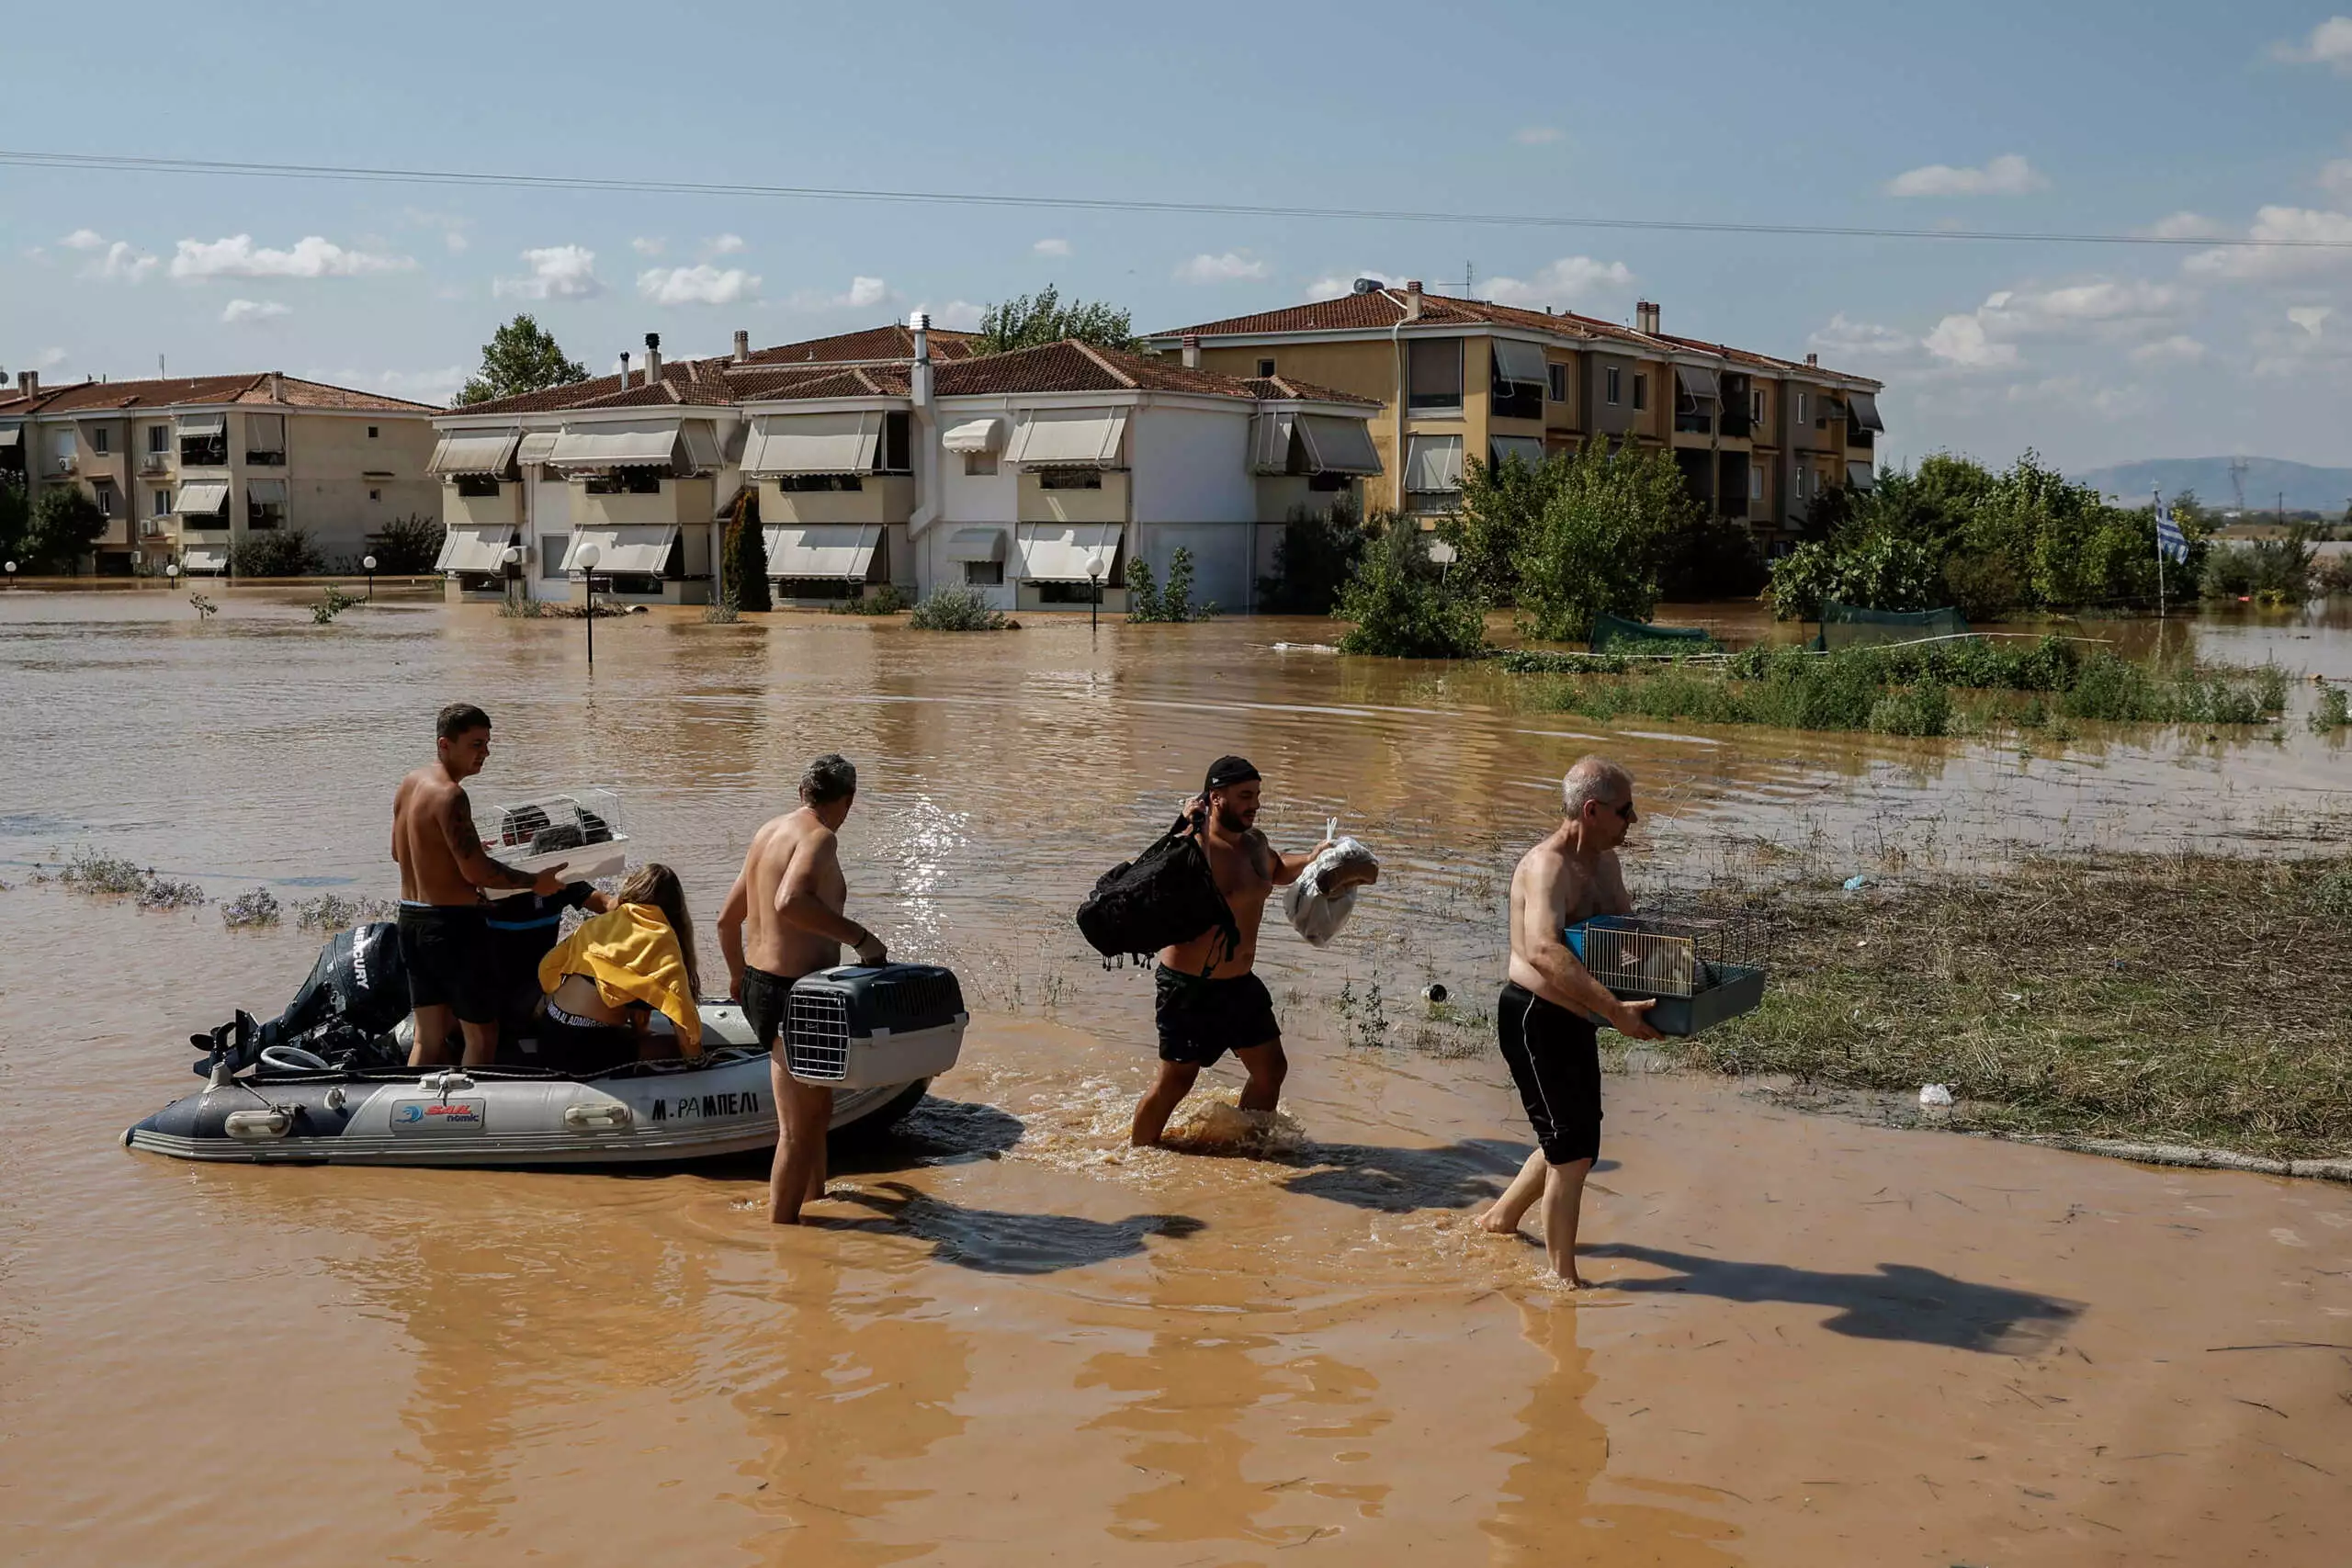 Πώς η κυβέρνηση εμπαίζει τους πλημμυροπαθείς: Αν μπήκε νερό… από τη στέγη δεν θα λάβουν αποζημίωση